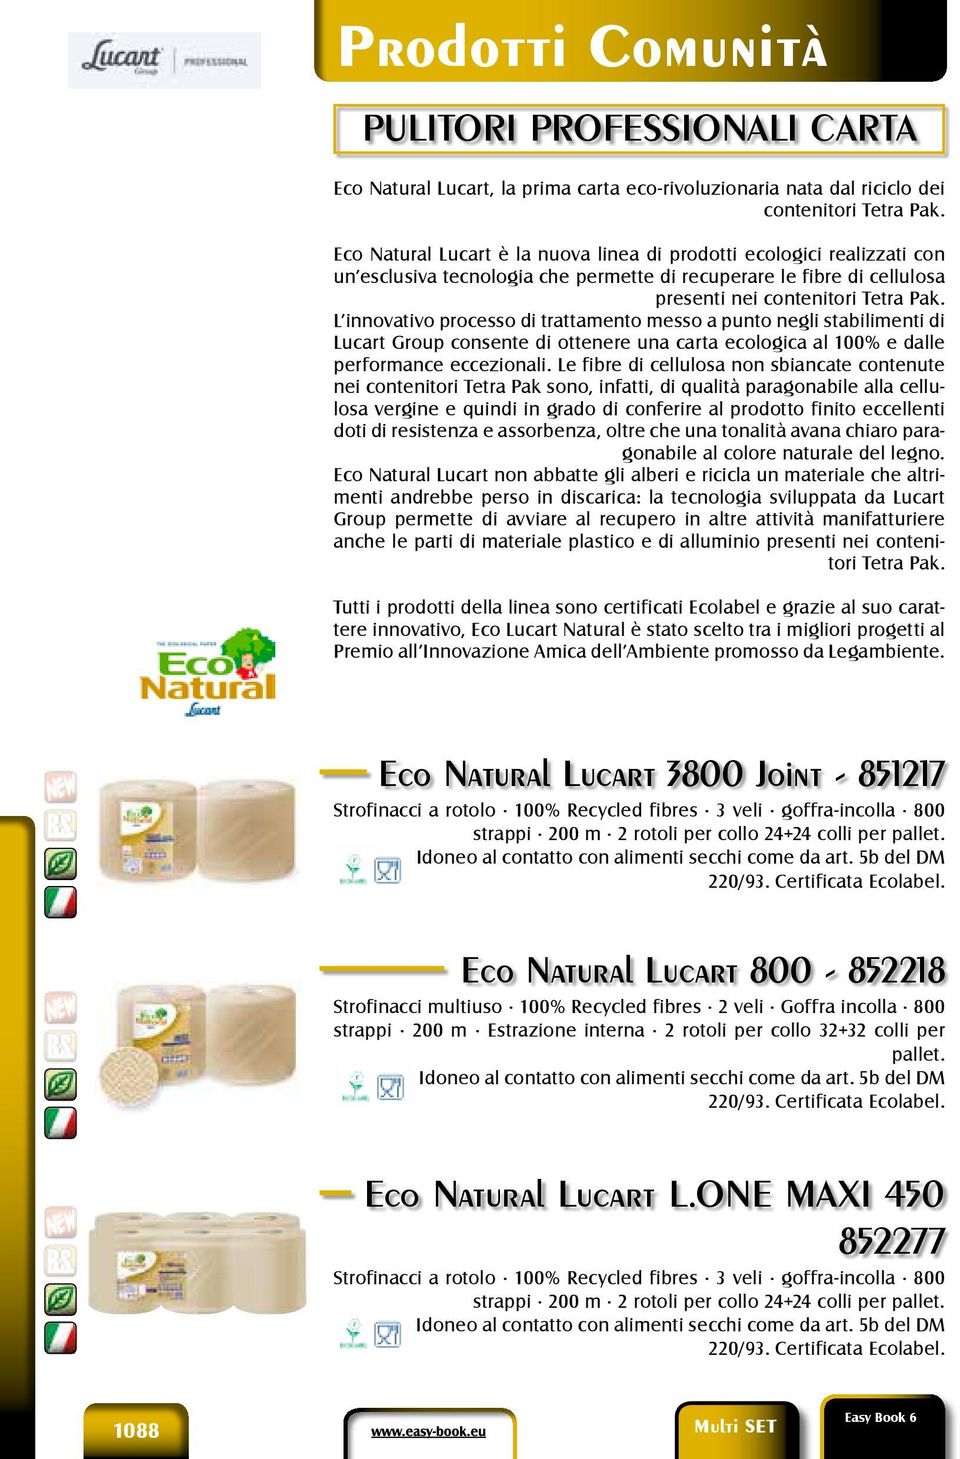 Eco Natural Lucart è la nuova linea di prodotti ecologici realizzati con un esclusiva tecnologia che permette di recuperare le fibre di cellulosa presenti nei contenitori Tetra Pak.